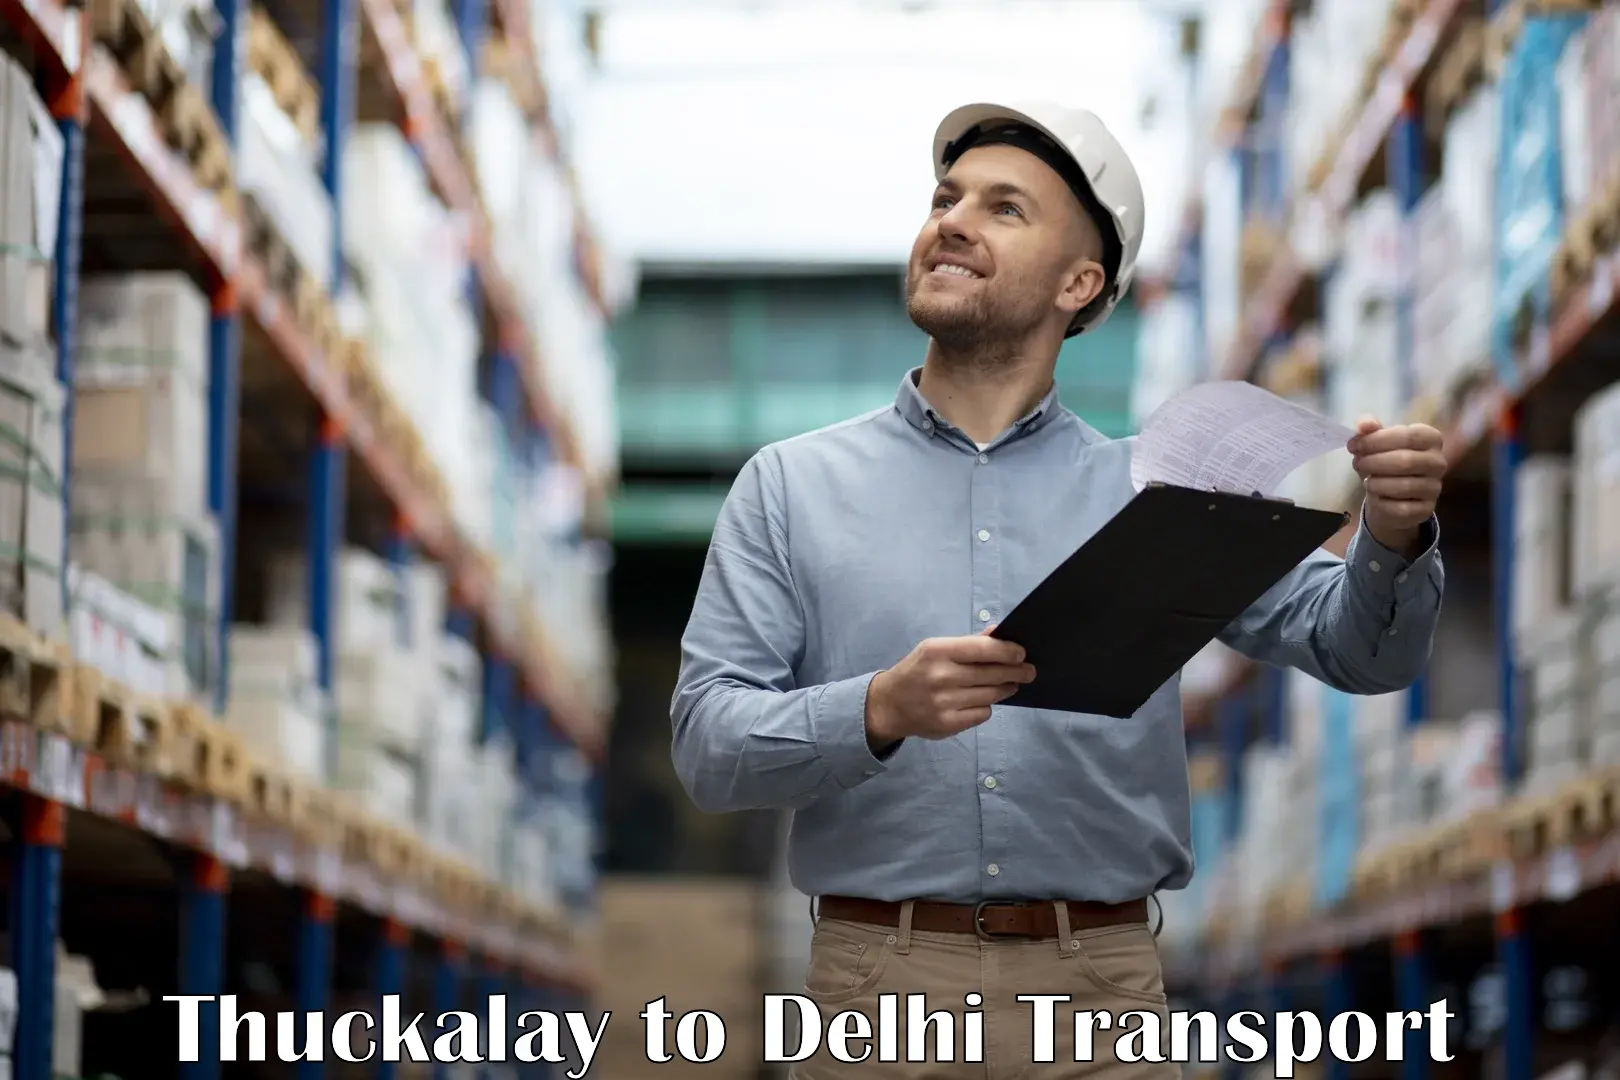 Bike shipping service Thuckalay to Delhi